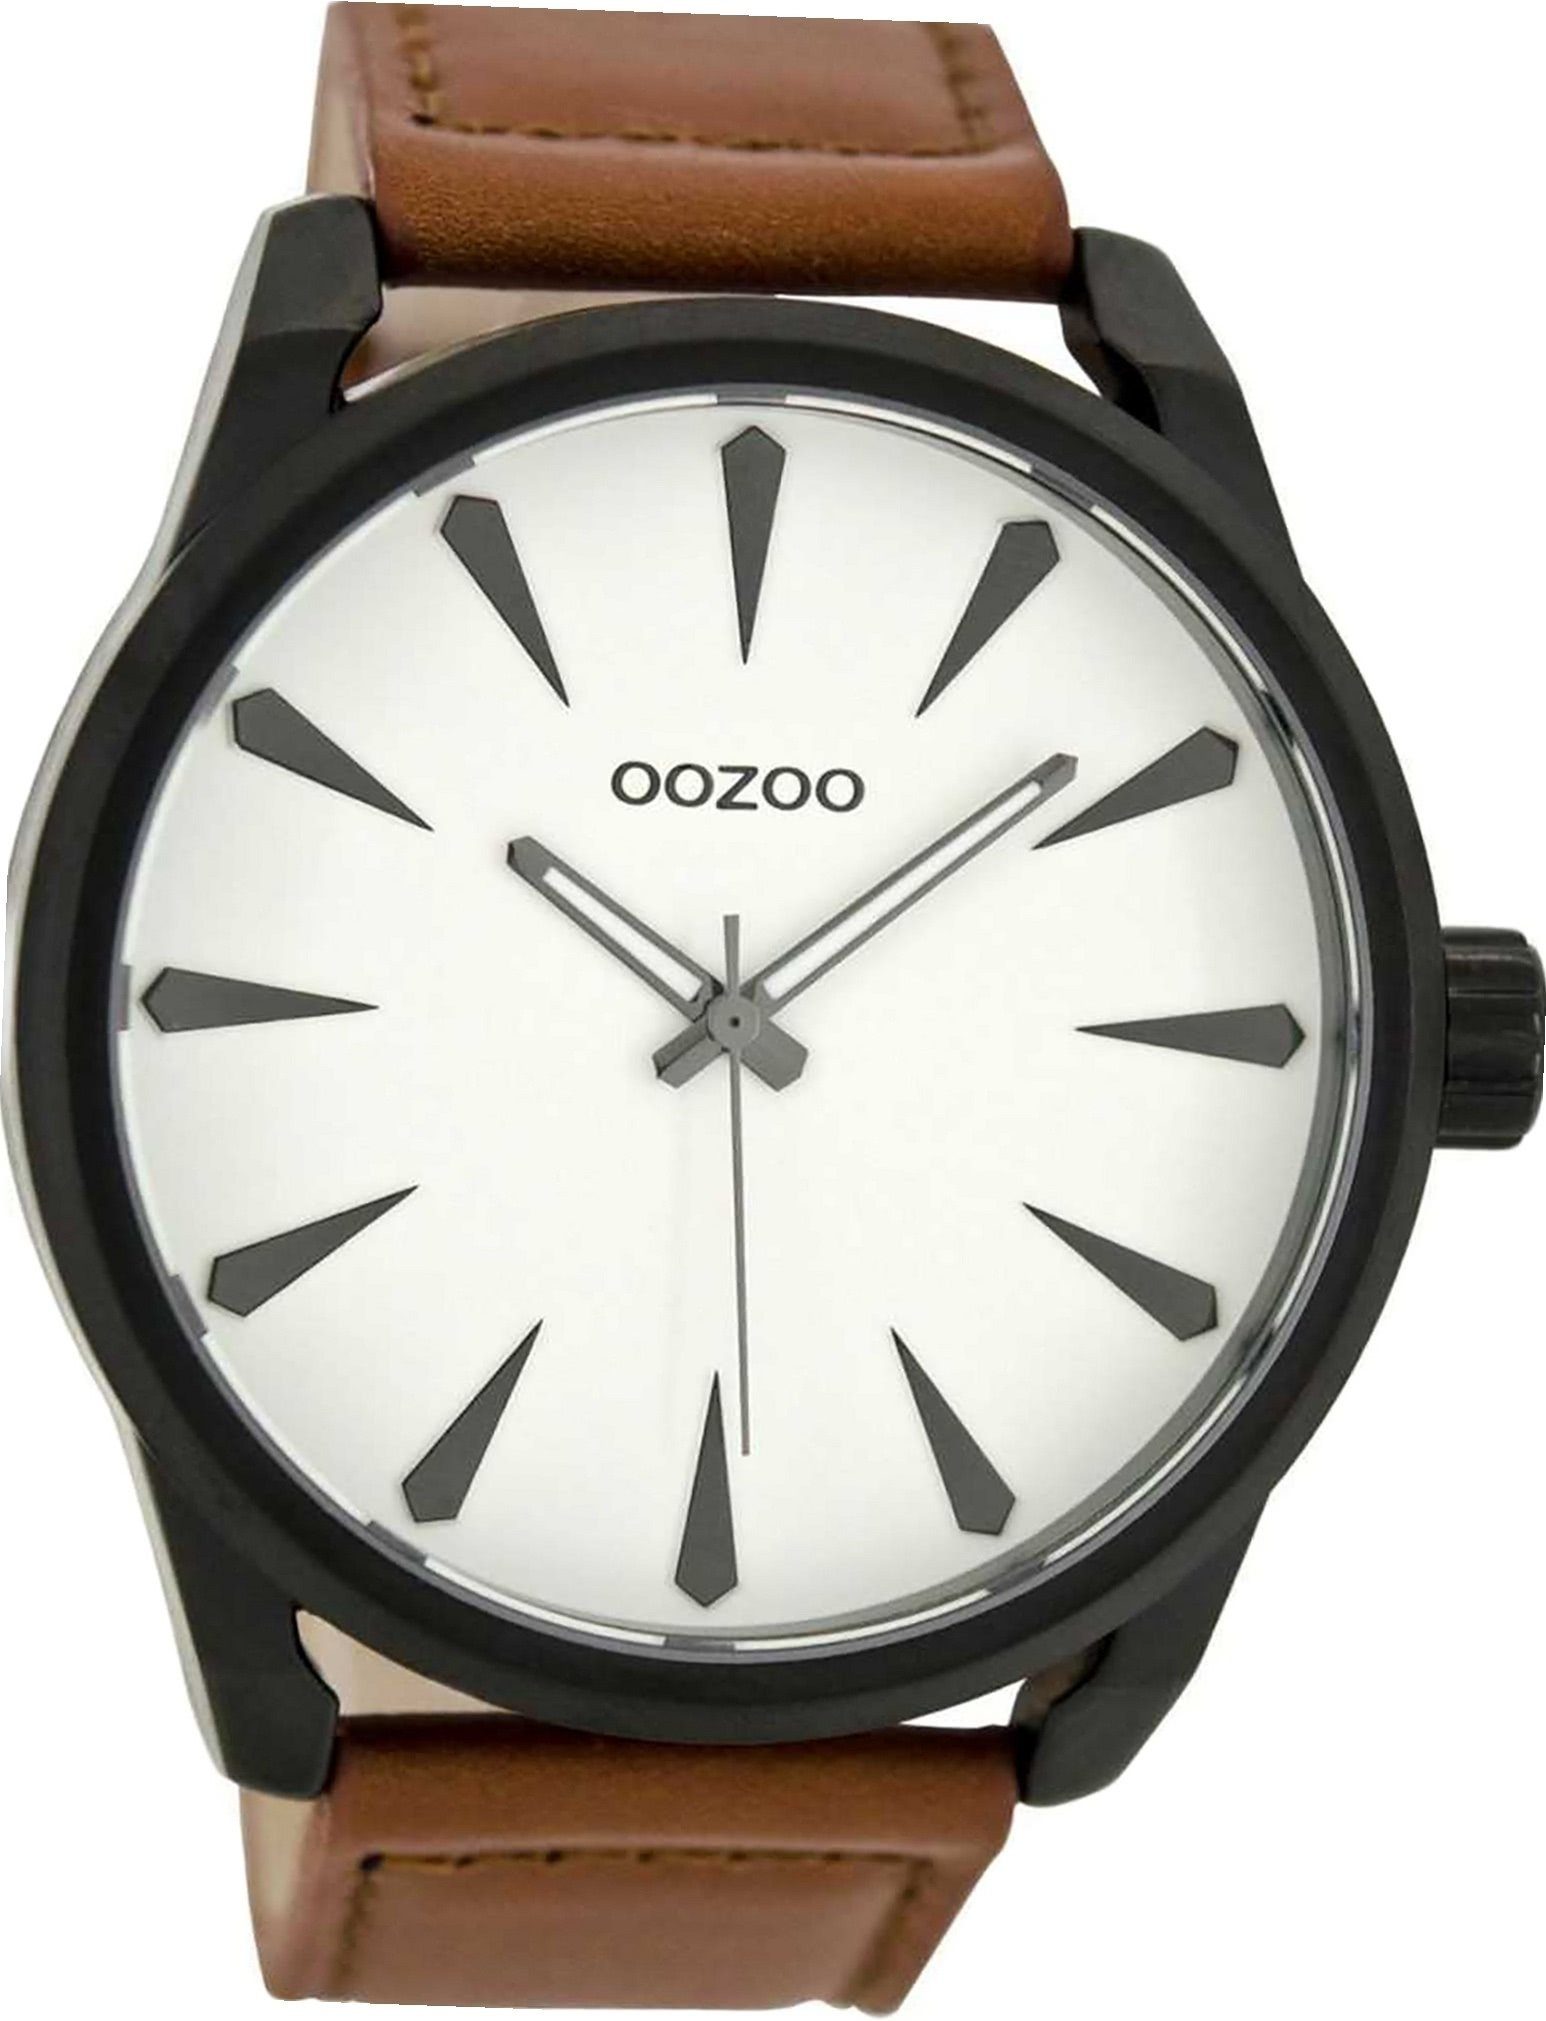 (ca. OOZOO Herren Gehäuse, C8226 Lederarmband 48mm) extra Oozoo Analog, groß Herrenuhr Uhr braun, rundes Quarzuhr Leder